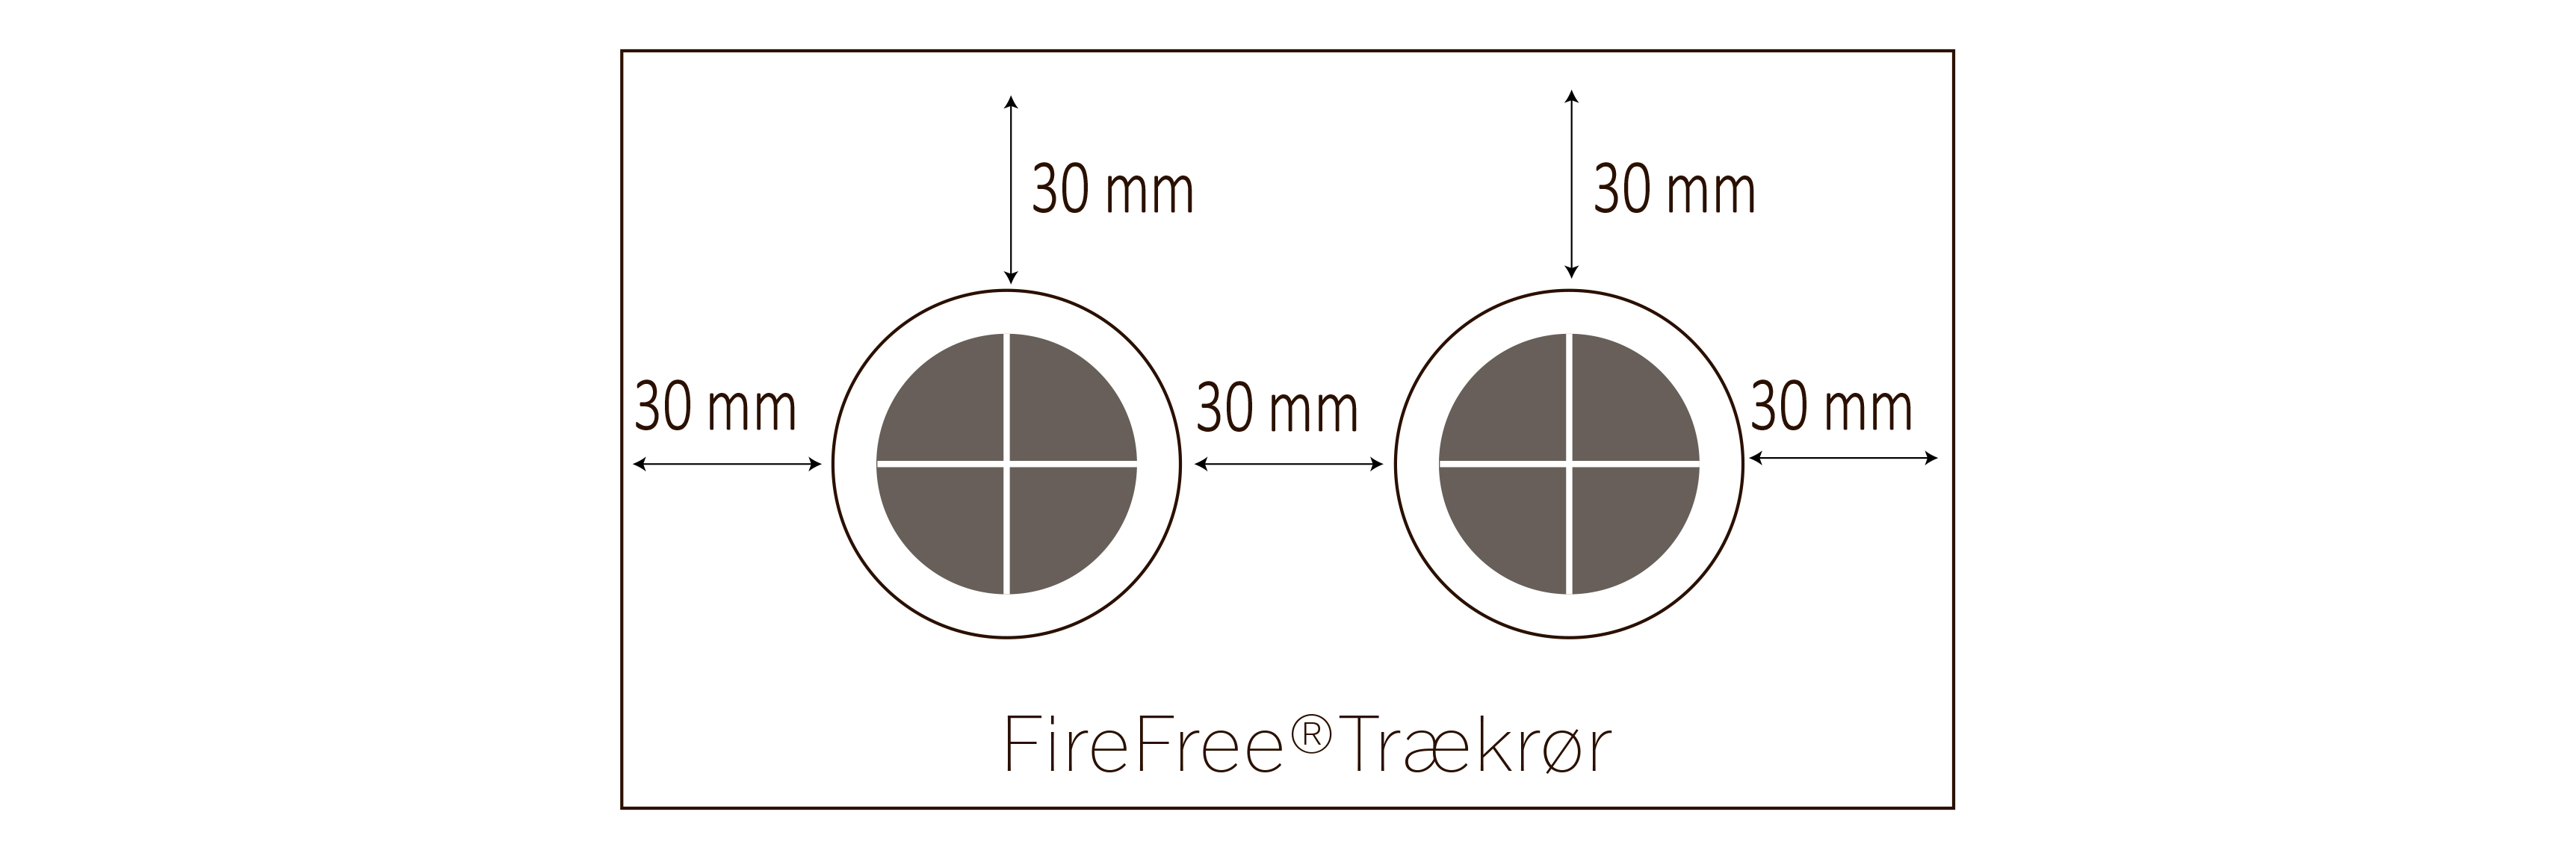 Vigtige respektafstande ved brandlukning med FireFree Trækrør